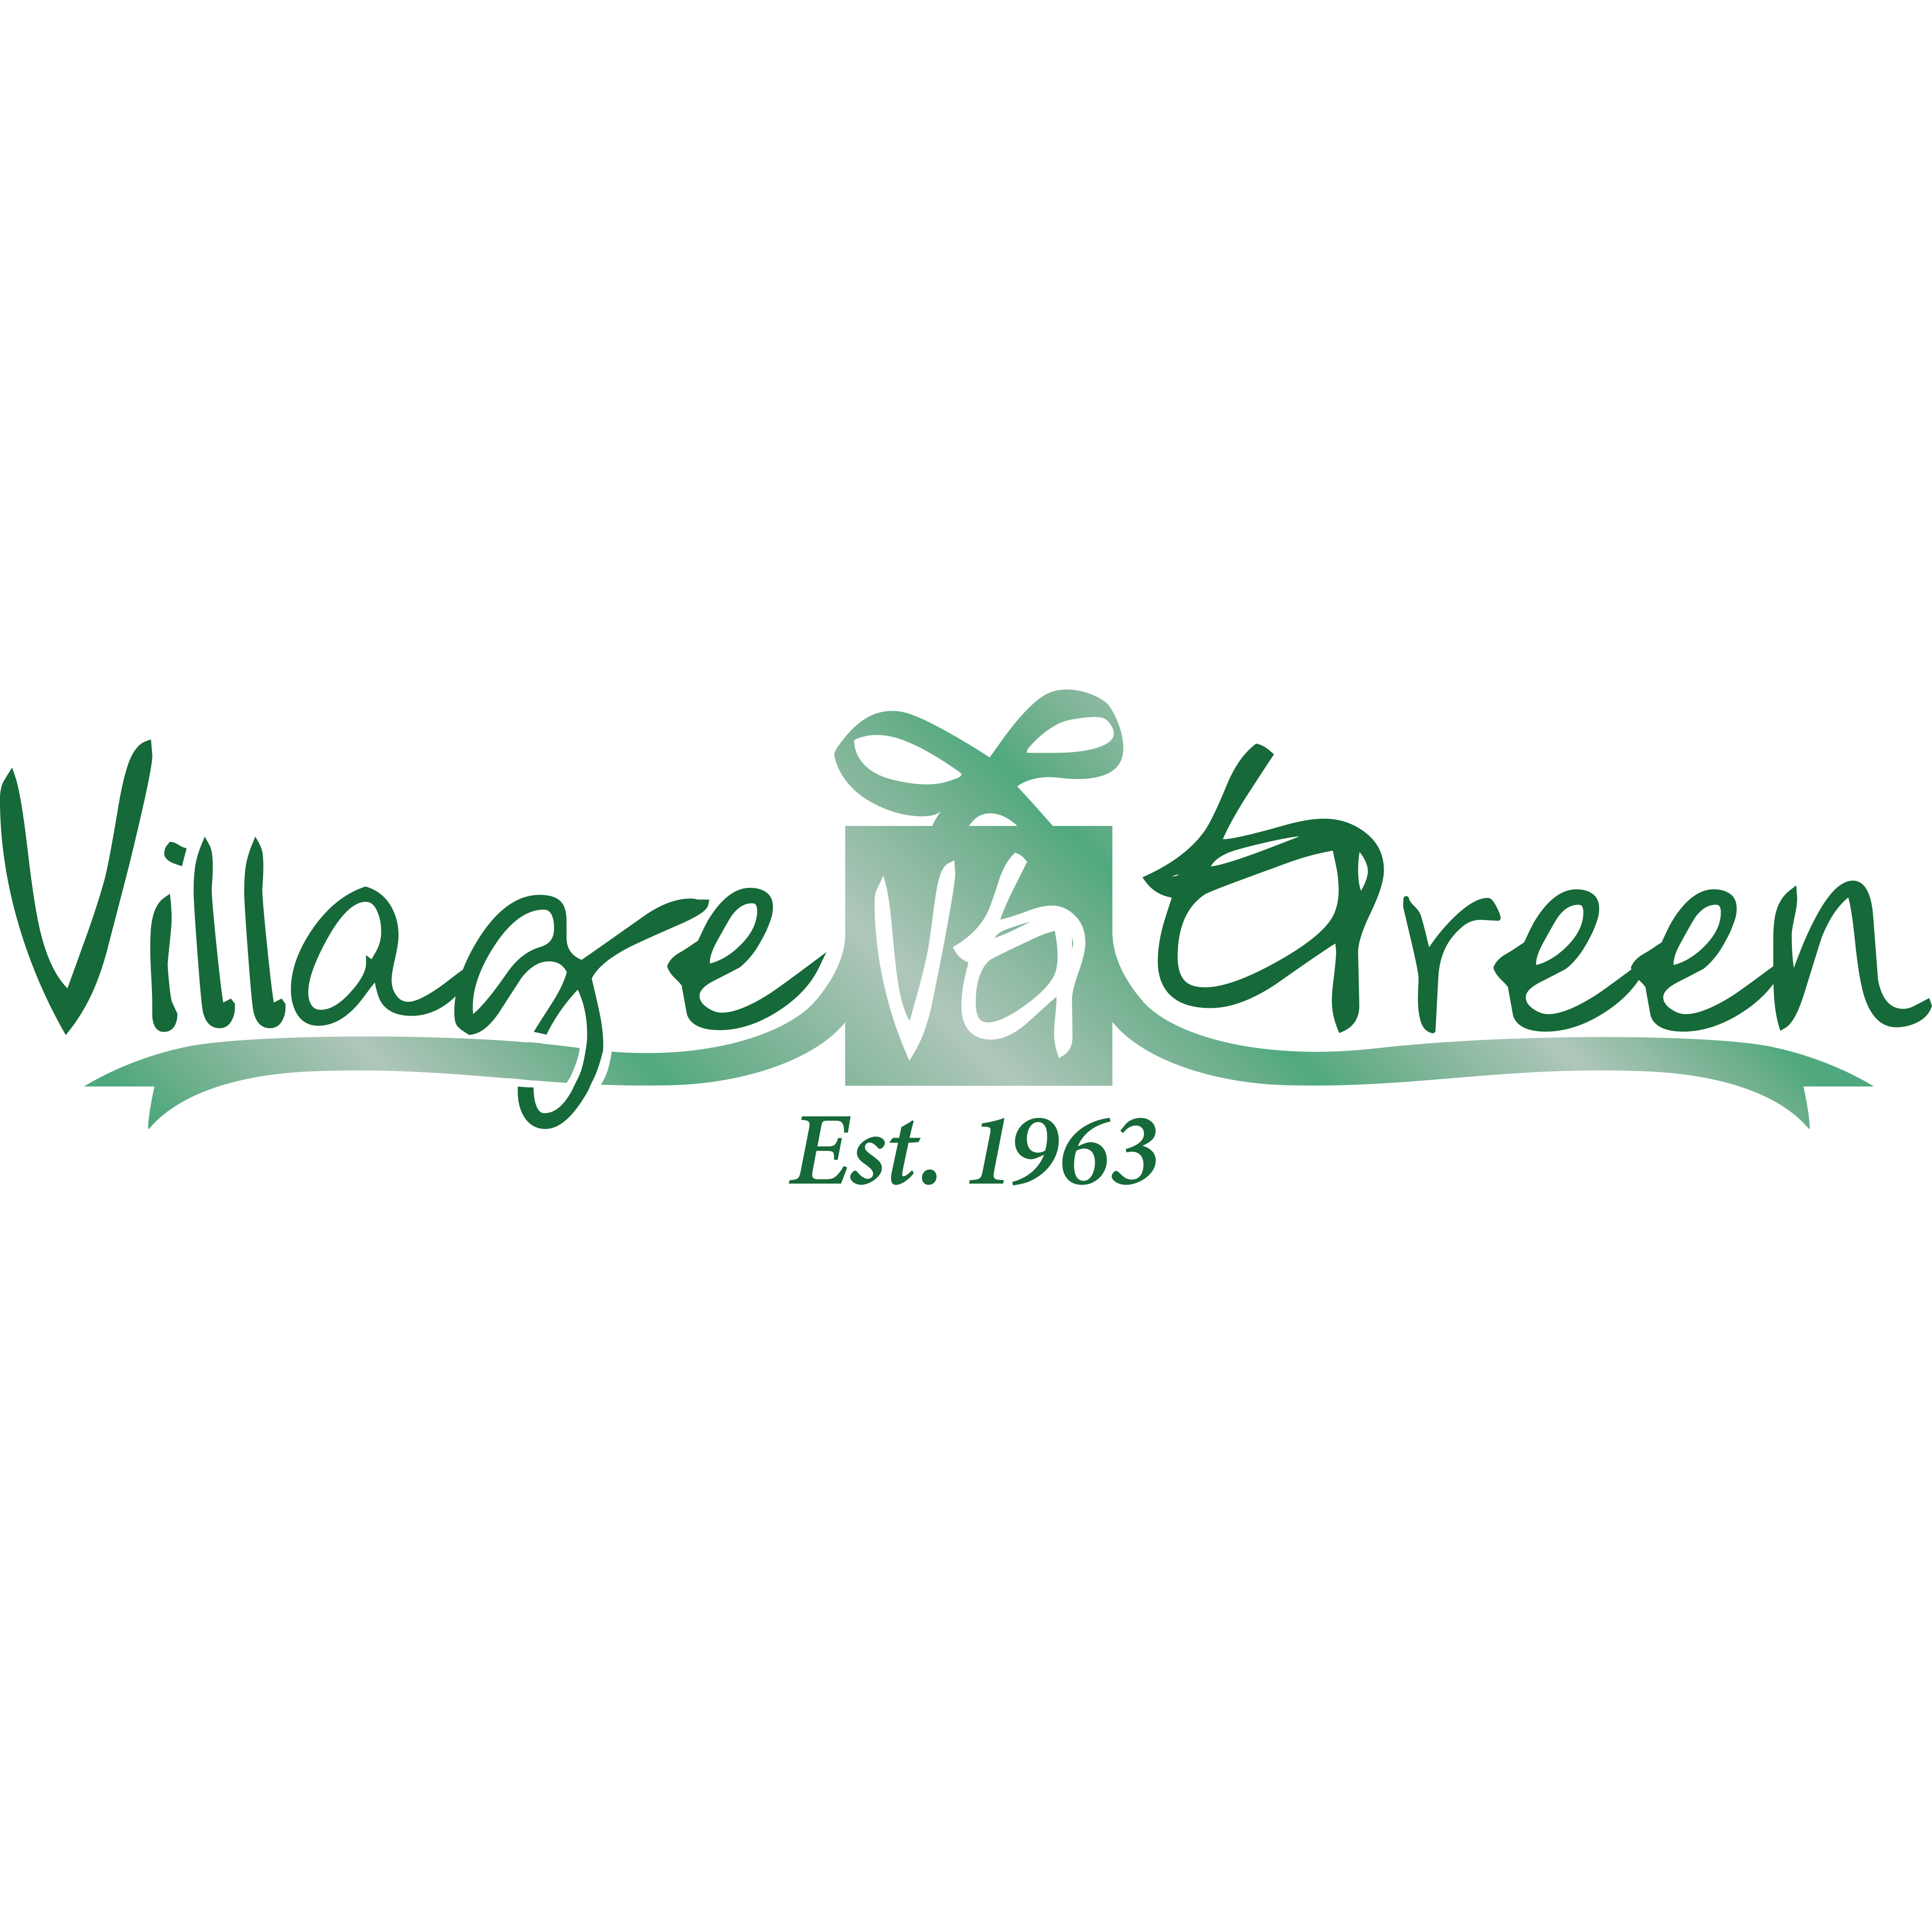 Village Green